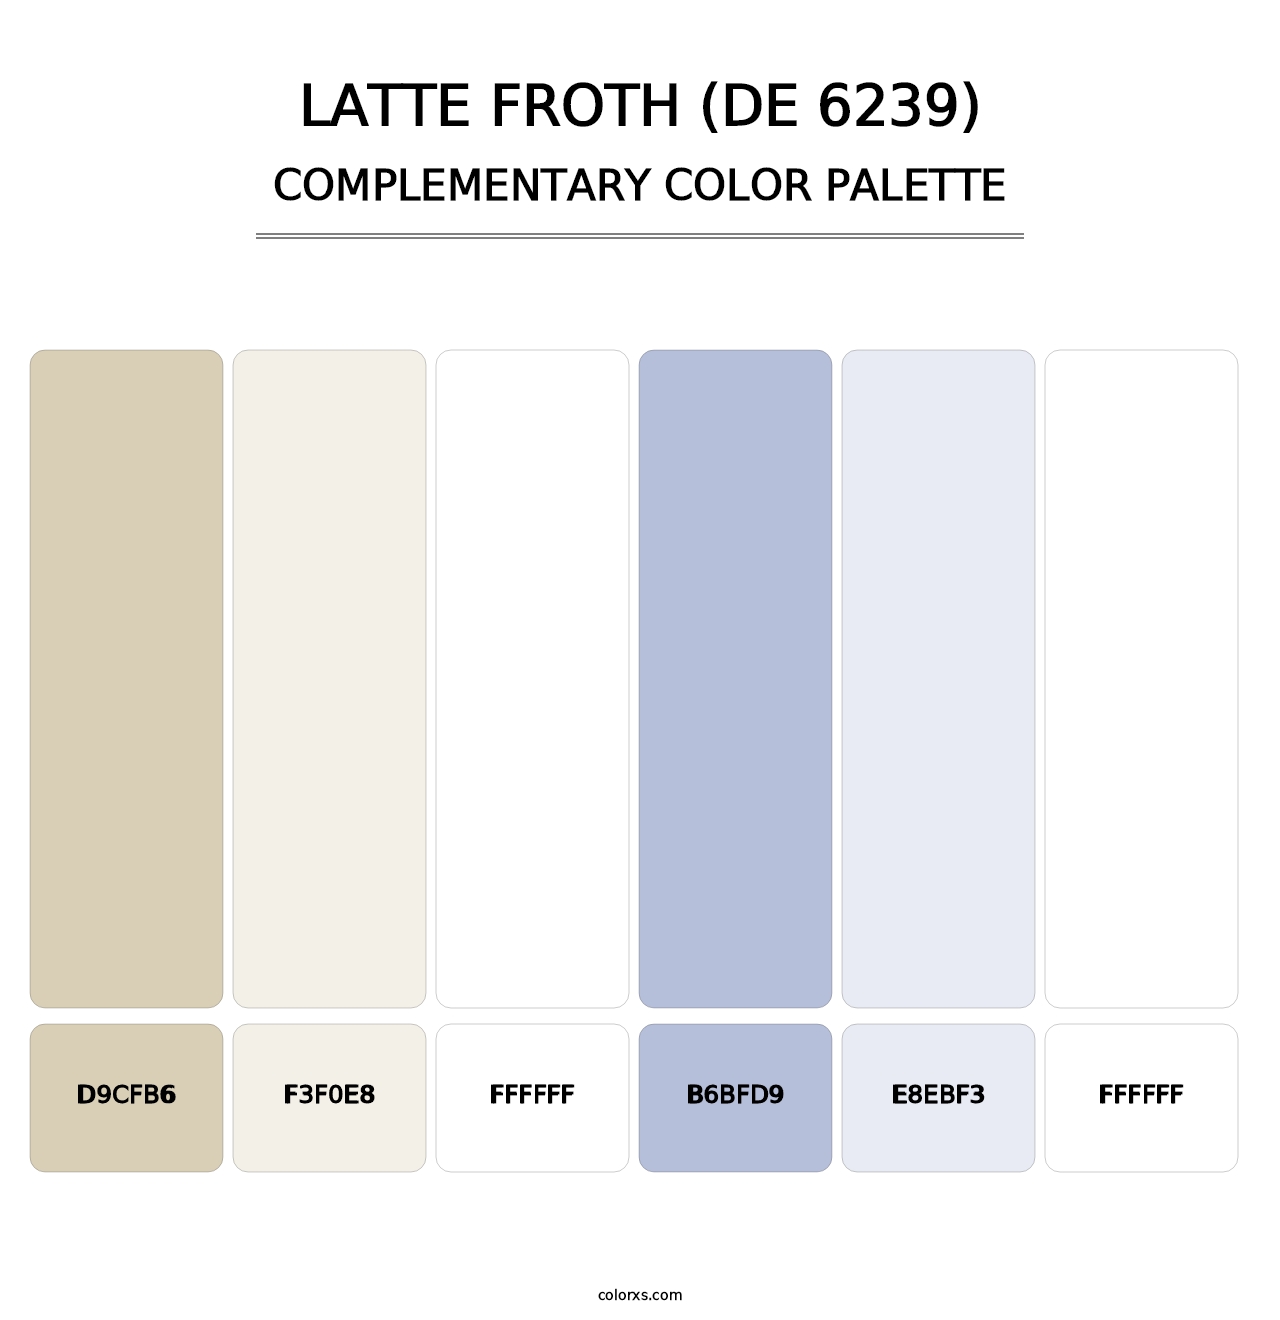 Latte Froth (DE 6239) - Complementary Color Palette